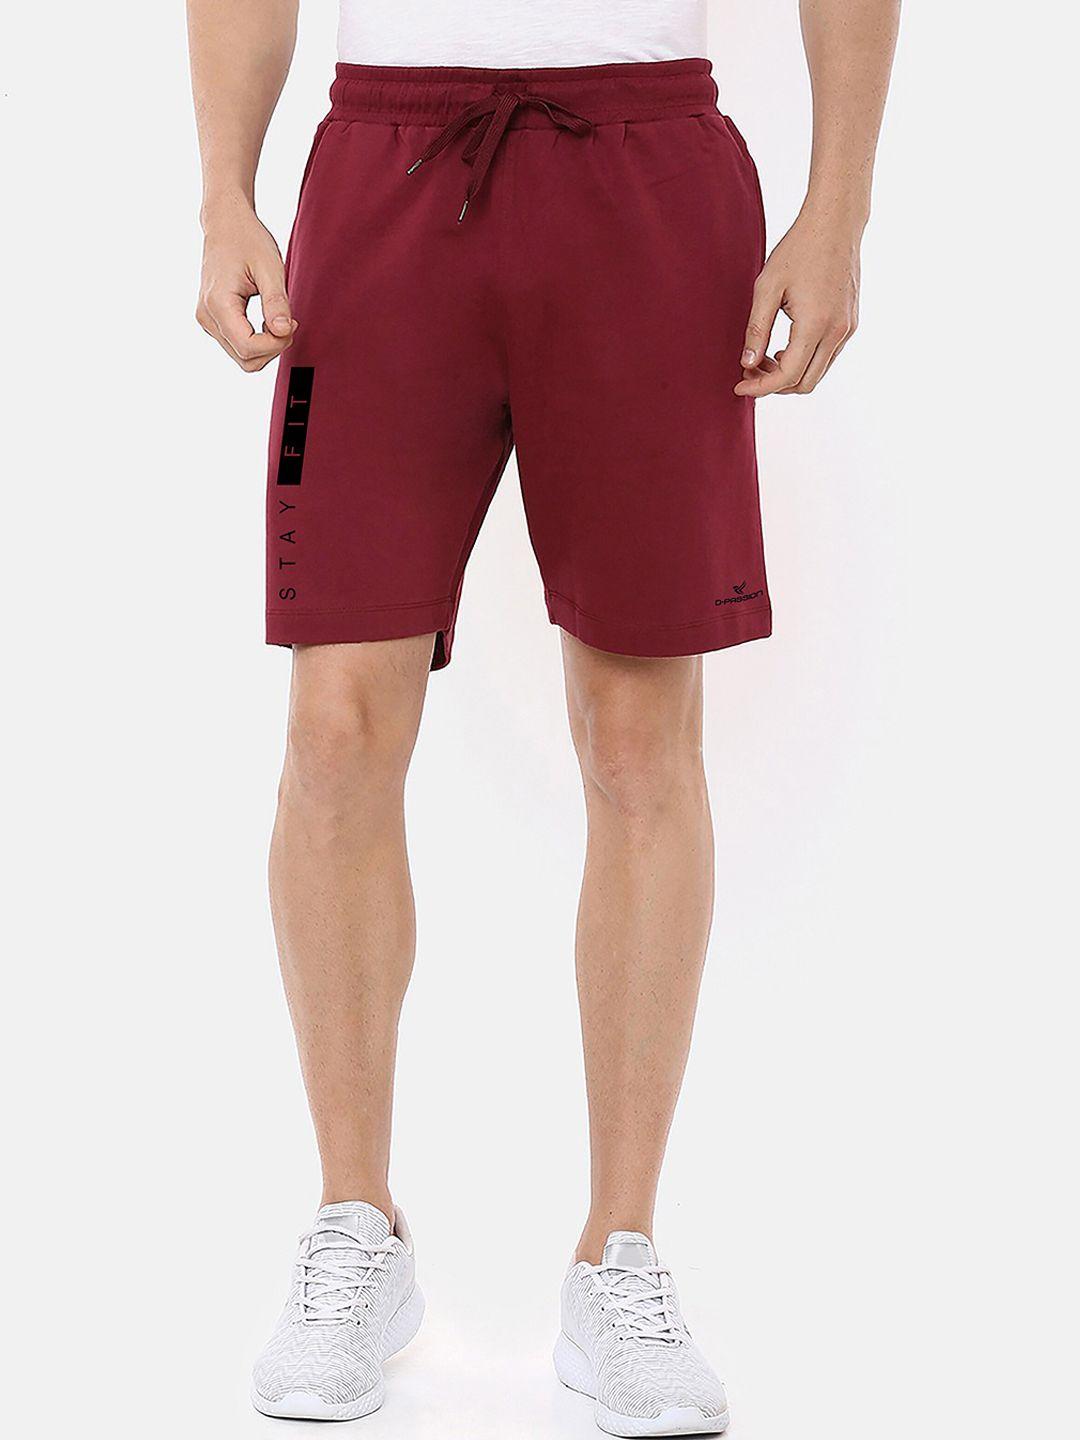 dpassion men maroon solid running sports shorts